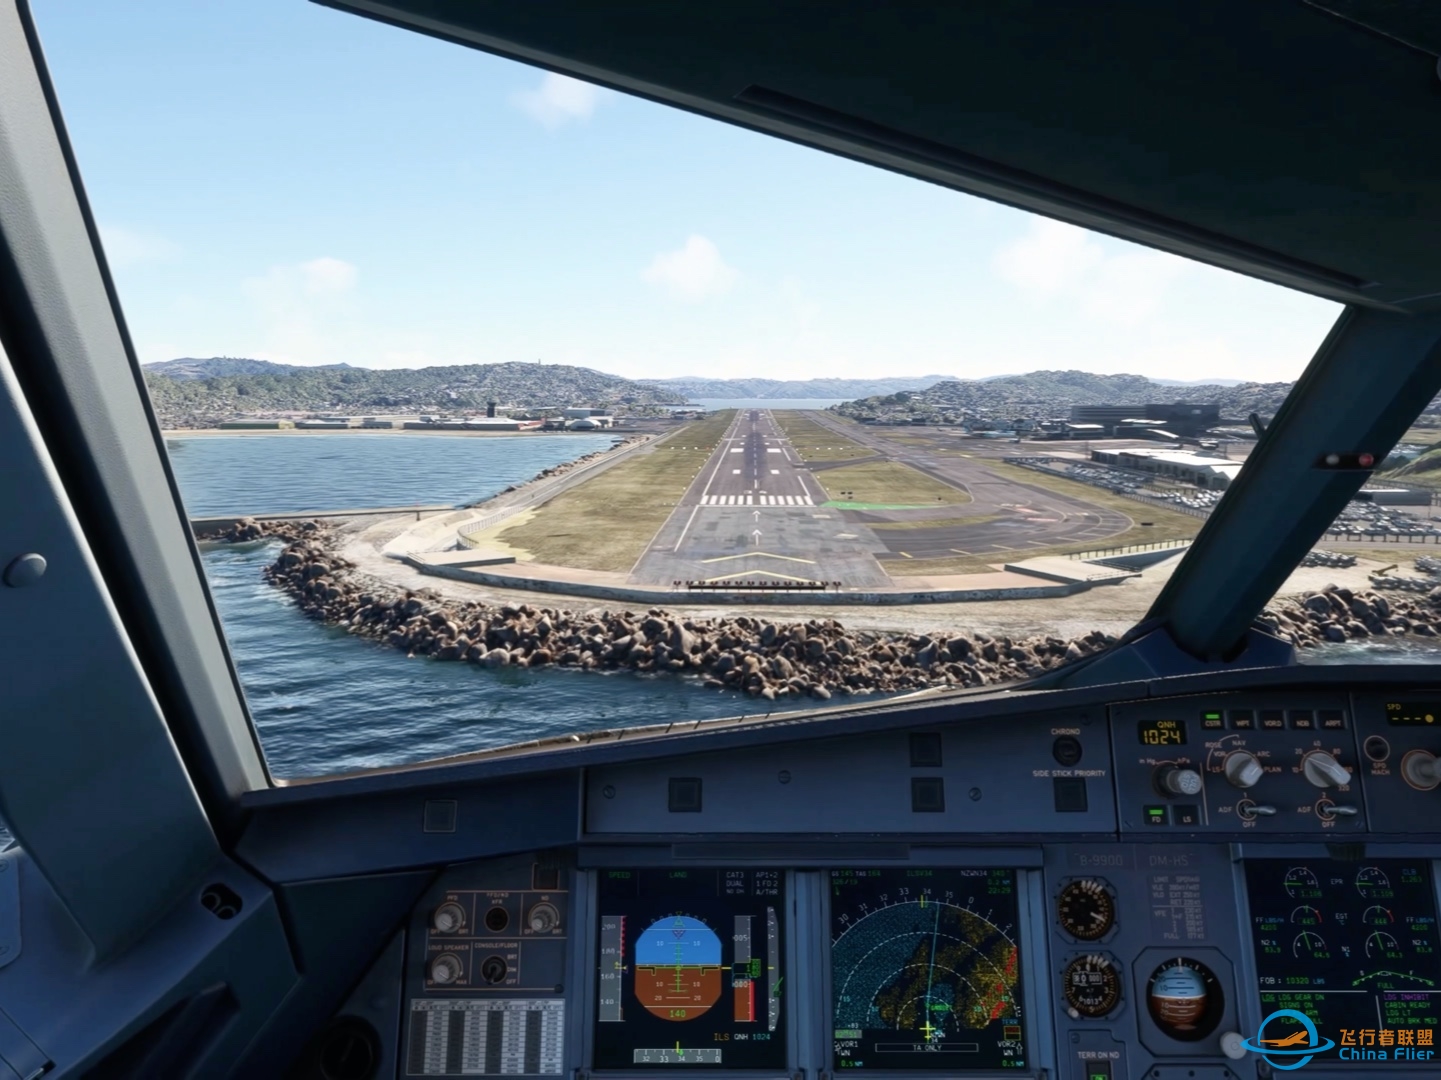 降落微软飞行模拟2020最喜欢的机场新西兰惠灵顿机场-6146 